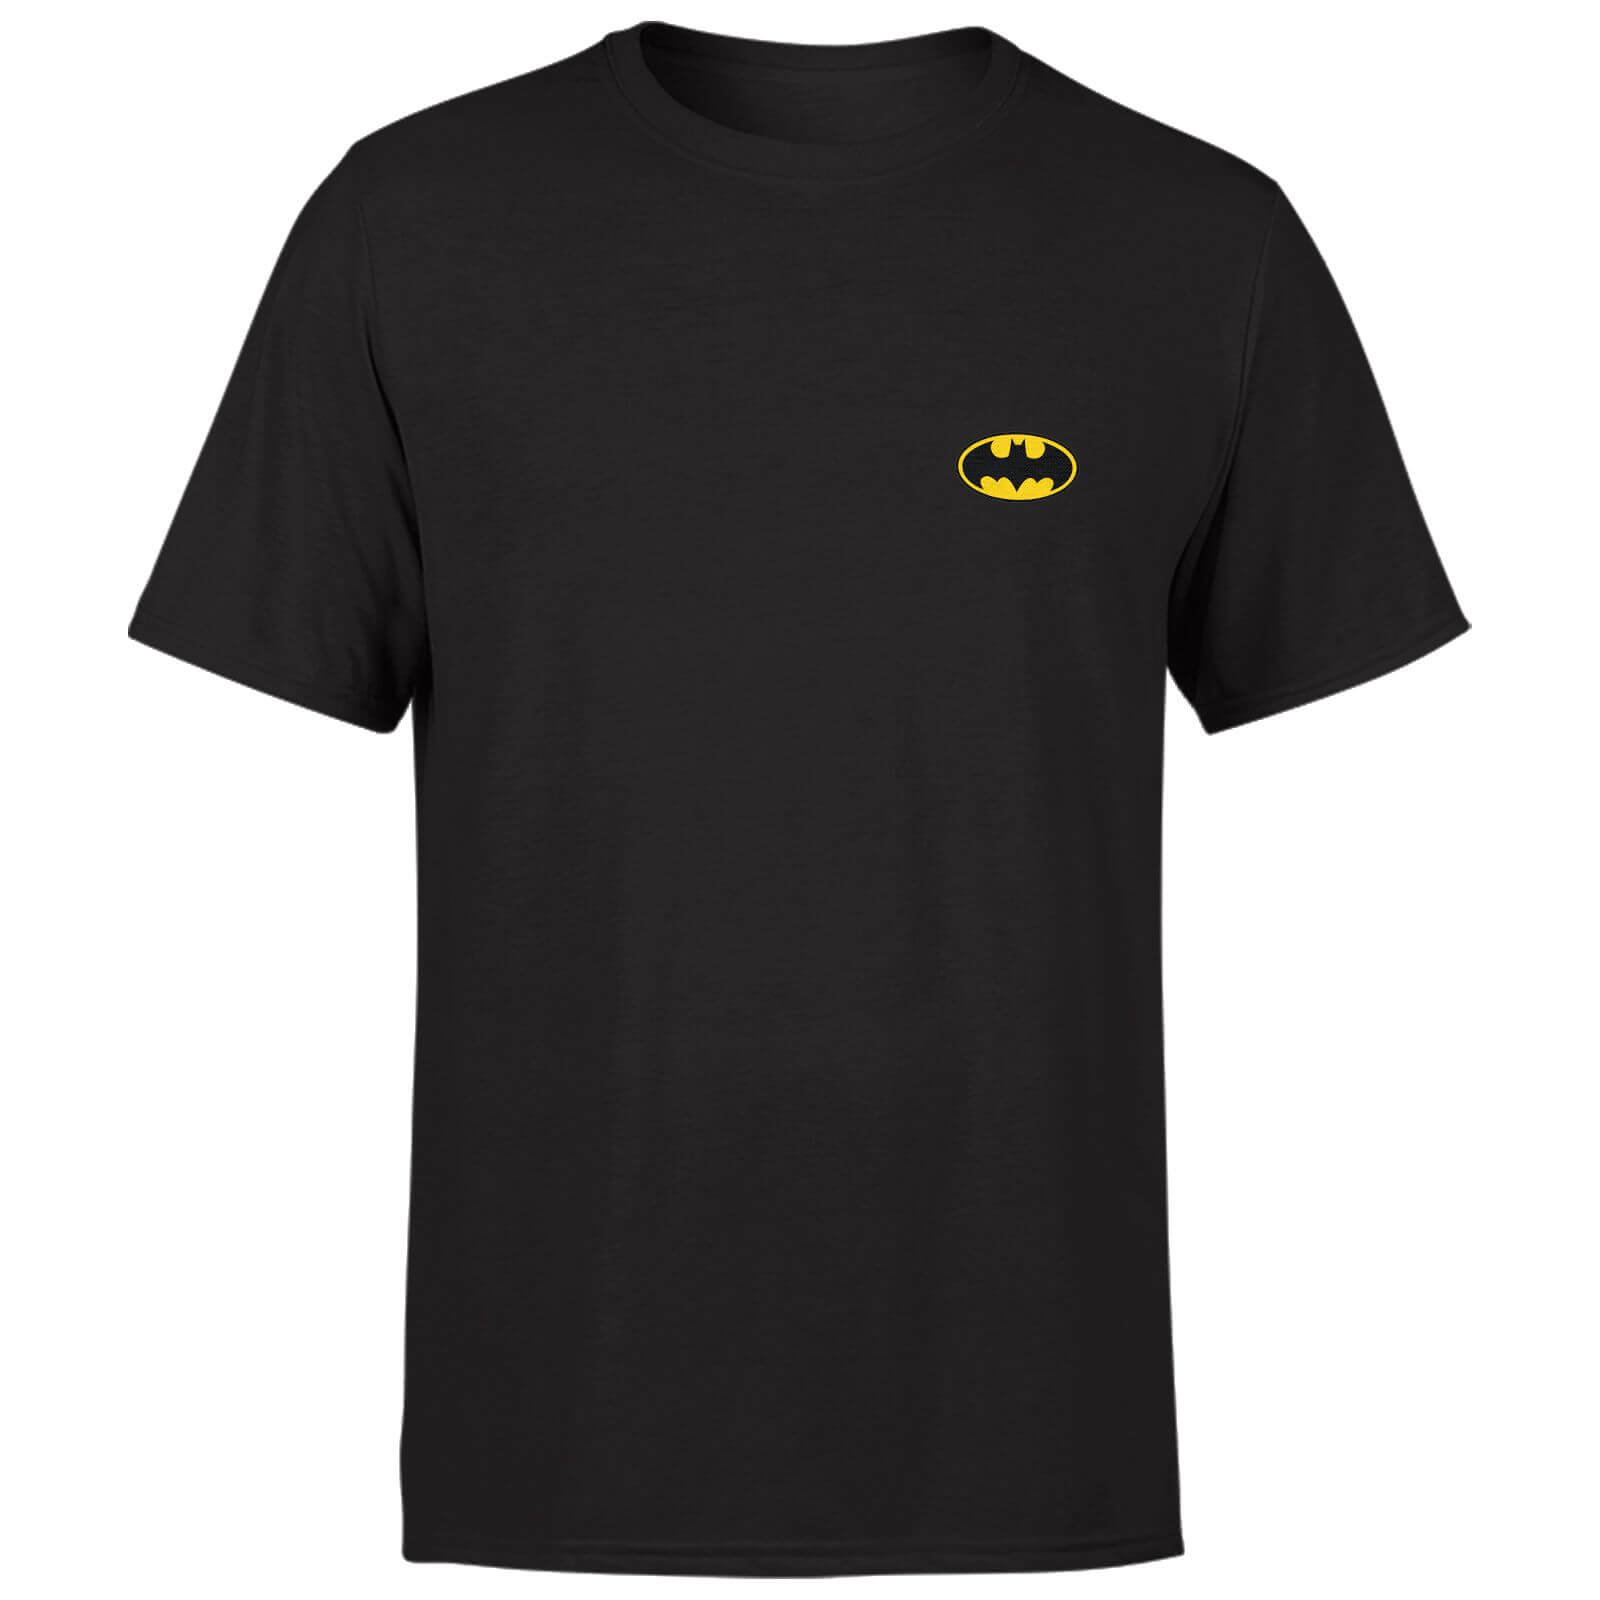 DC Batman Unisex T-Shirt - Black - M